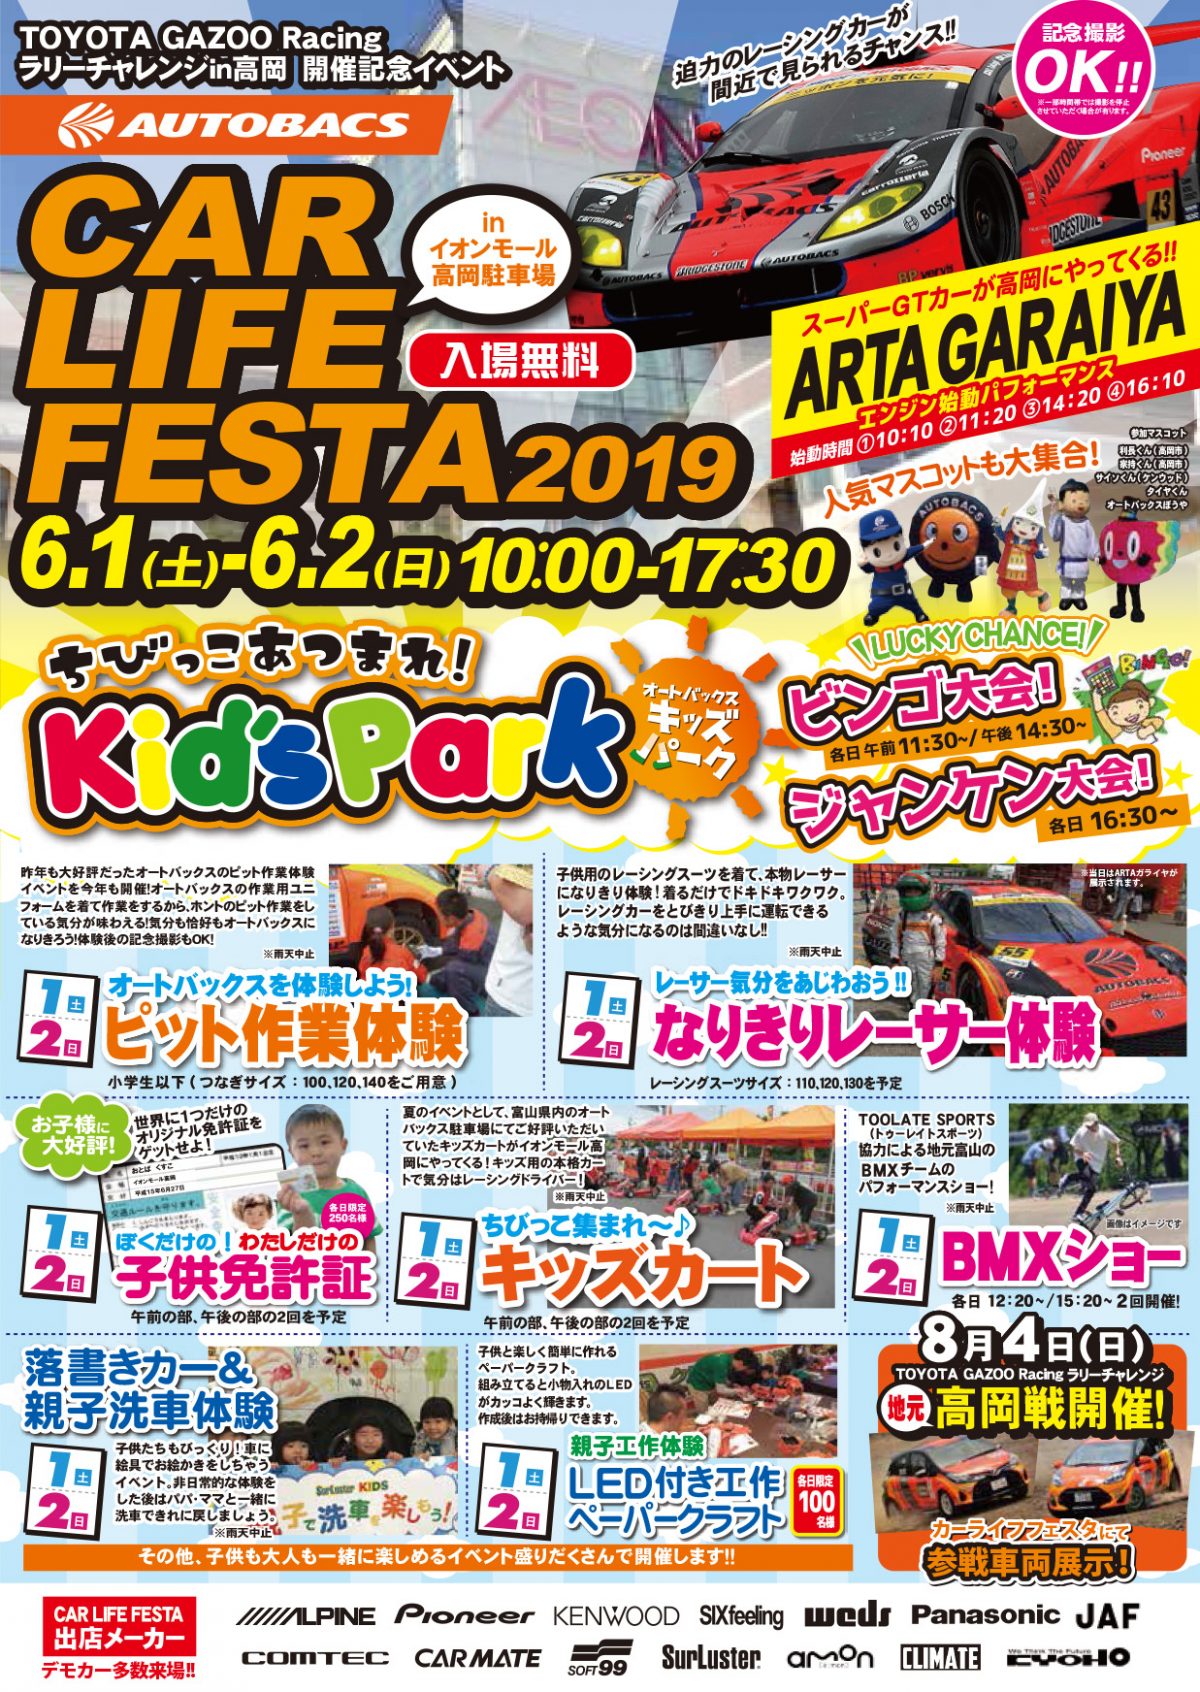 Car Life Festa 19 オートバックス富山